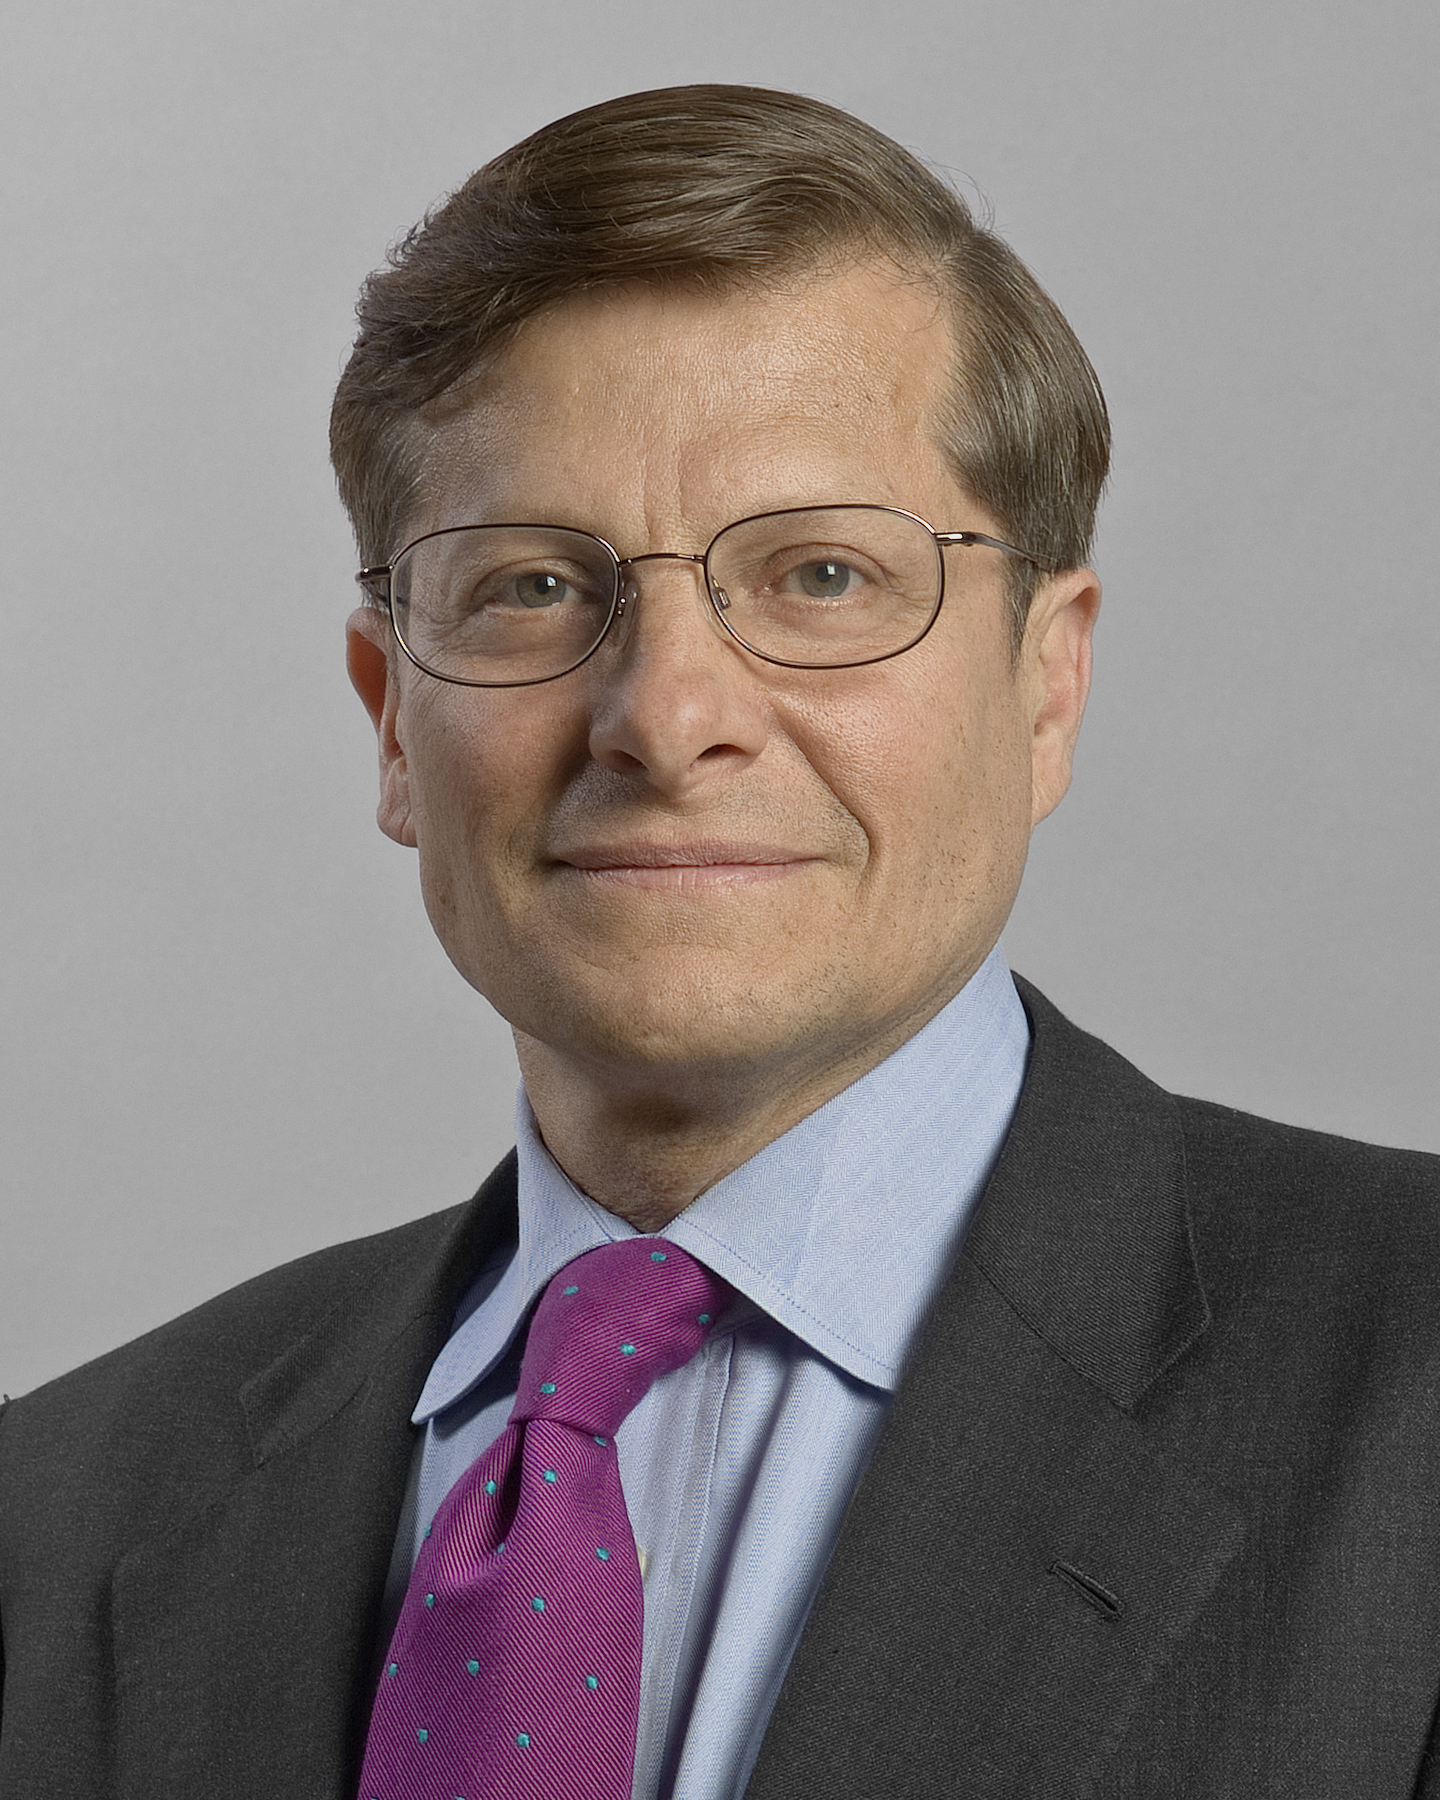 Dr. Michael Roizen